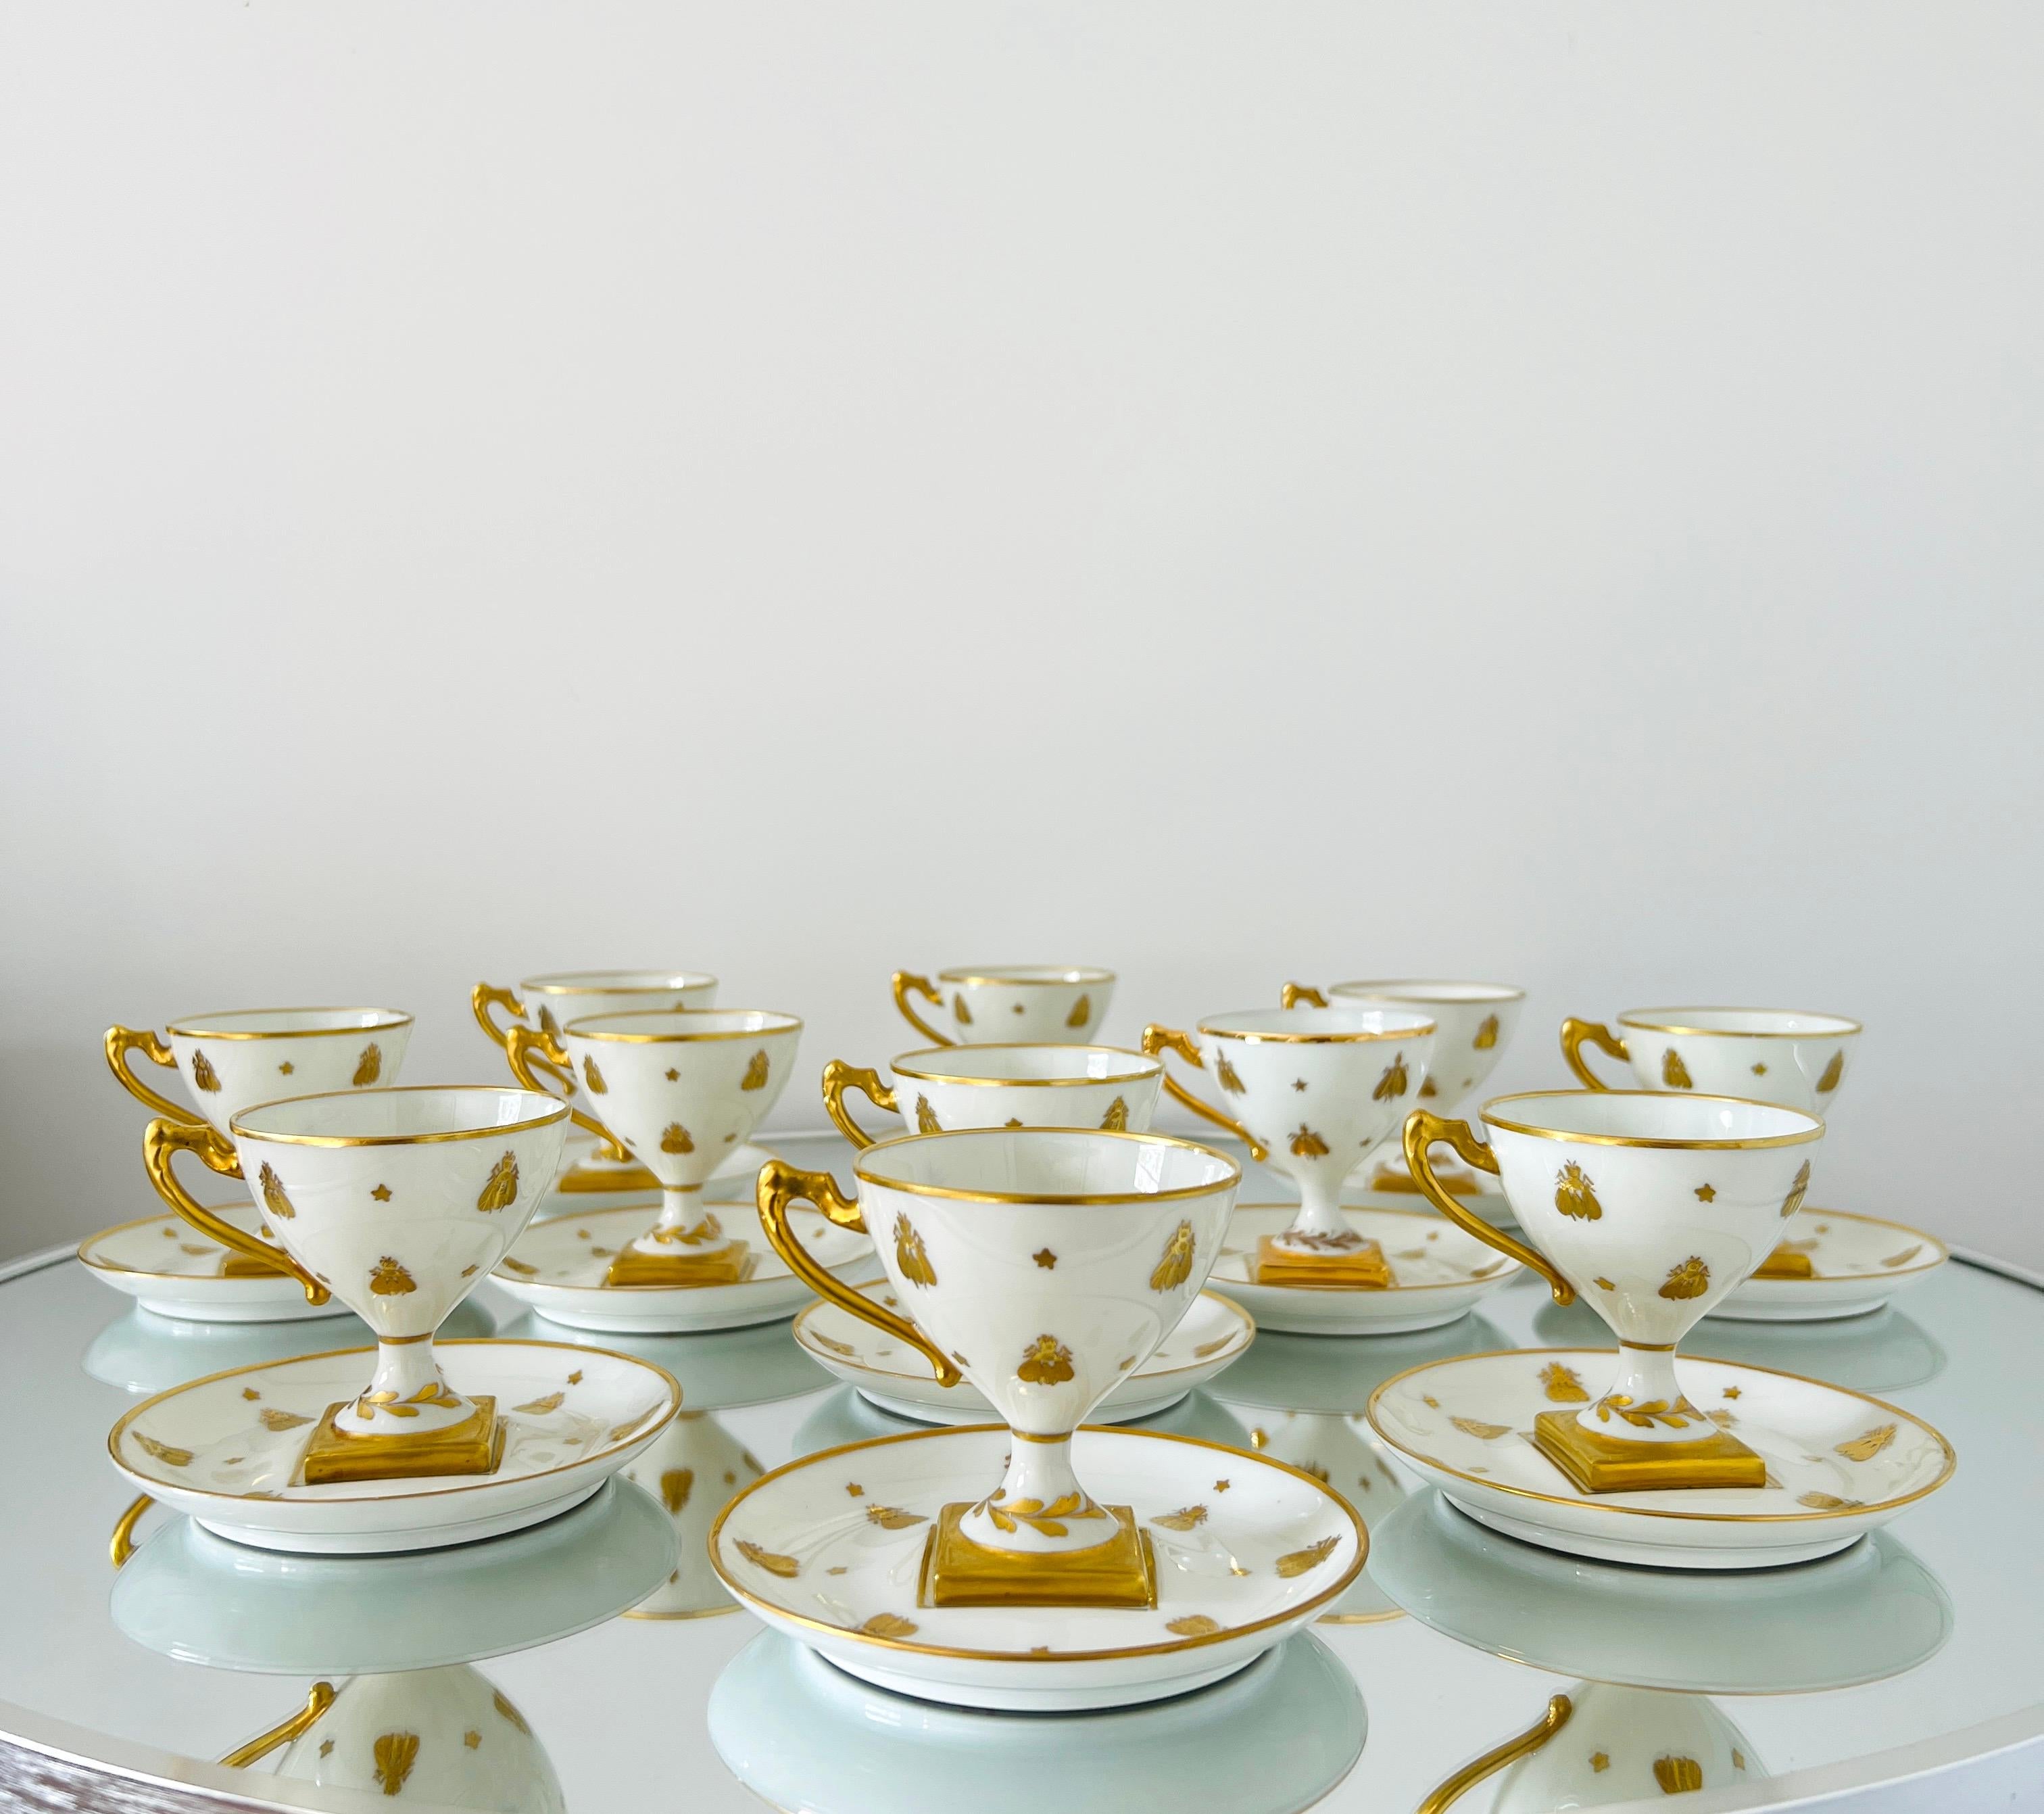 Exquisites neoklassizistisches Tassenbesteck aus feinem Porzellan und 24-karätigem Gold von Camille Le Tallec. Das Dekor stammt aus der Collection'S Abeilles und zeigt goldene napoleonische Bienen, die von Hand in Gold auf weißes Porzellan gemalt